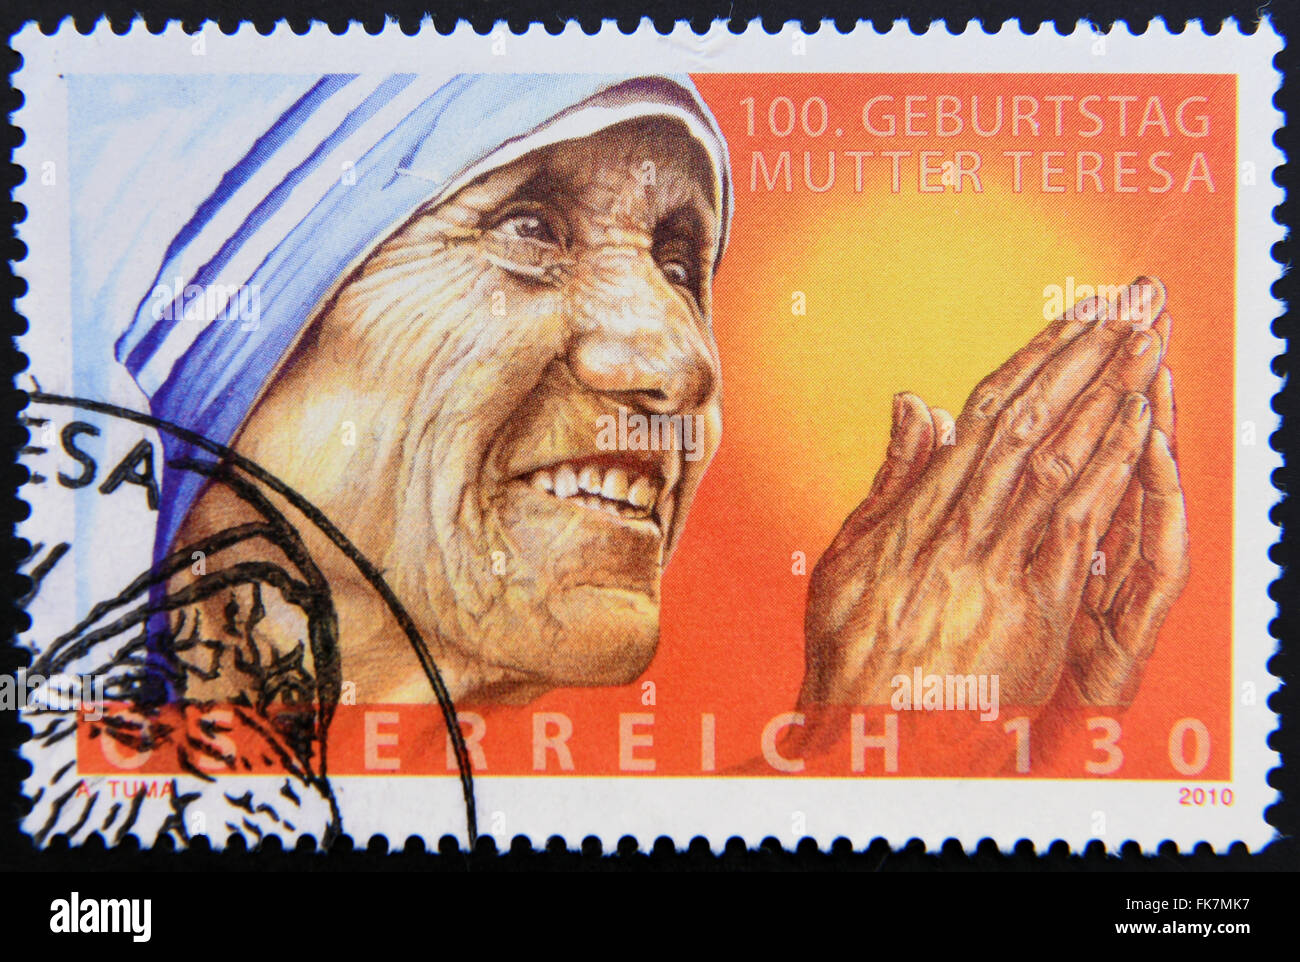 Österreich - ca. 2010: Eine Briefmarke in Österreich zeigen ein Bild von Mutter Teresa, ca. 2010 gedruckt. Stockfoto